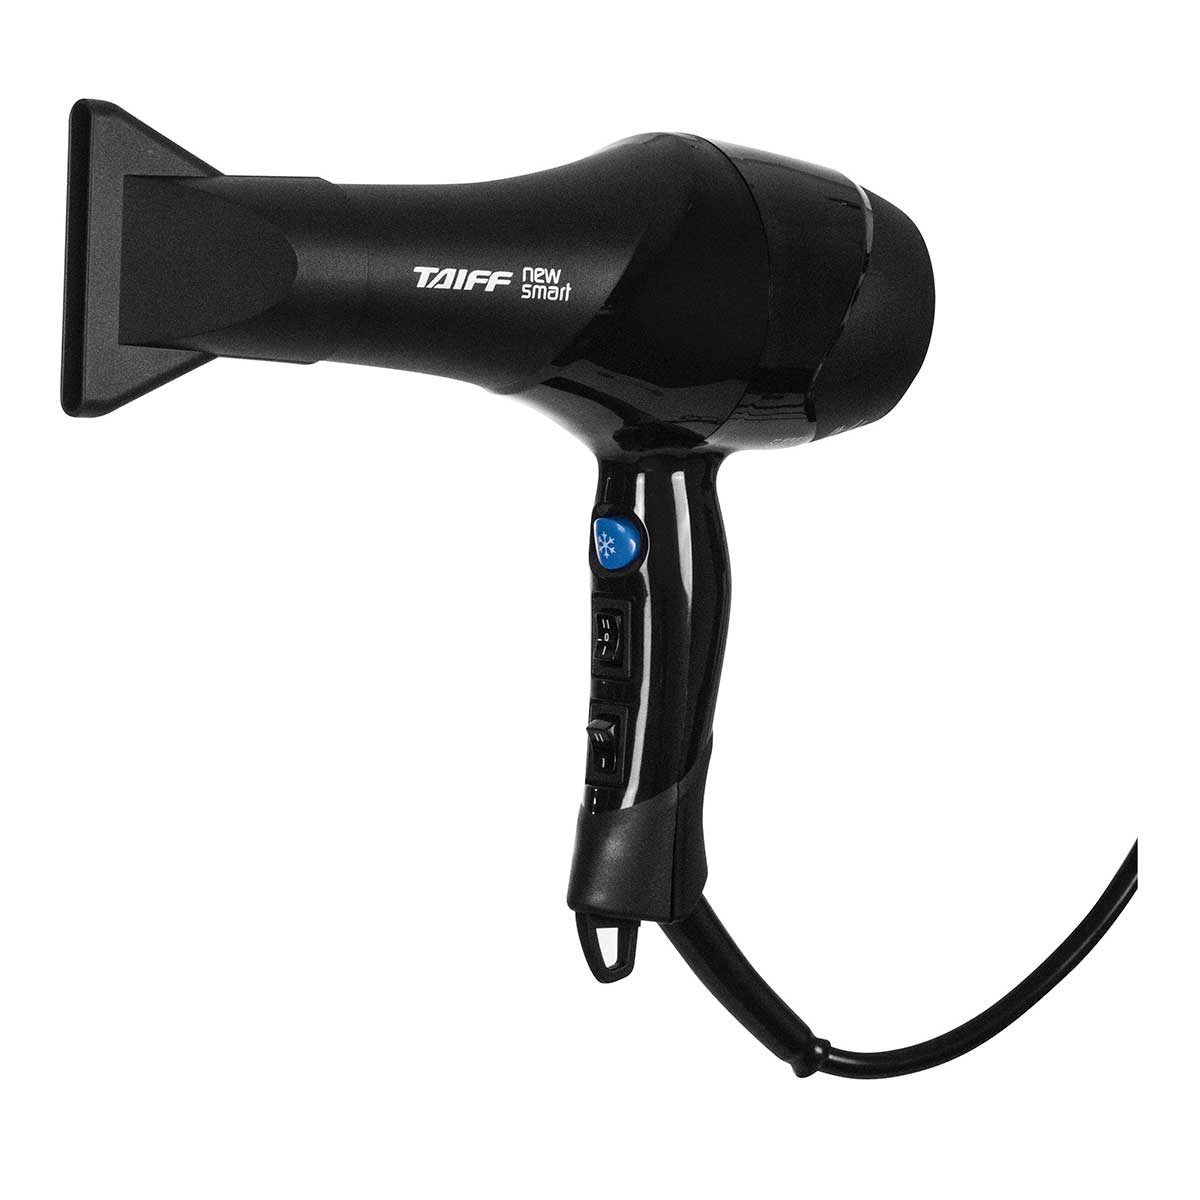 secador-de-cabelo-taiff-new-smart-1700w-preto-110v-3.jpg